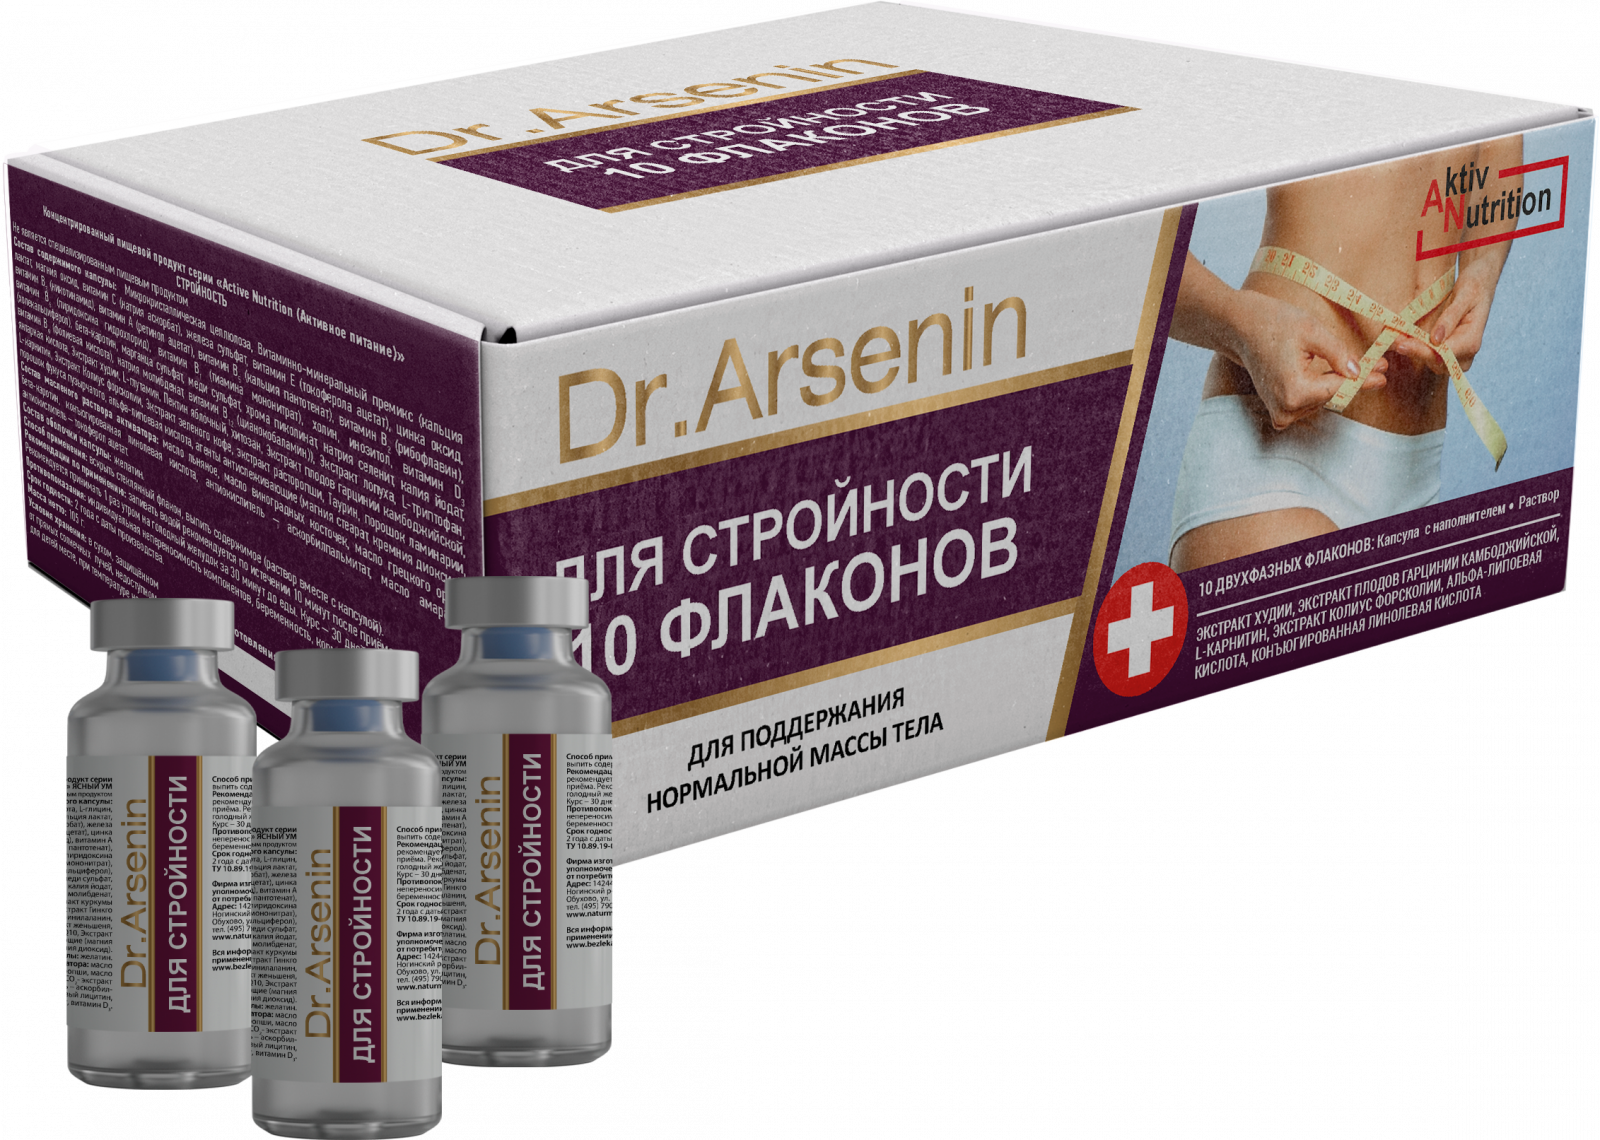 Каталог «"Active nutrition" СТРОЙНОСТЬ Dr. Arsenin 10 флаконов» - Капсулы в Активаторе